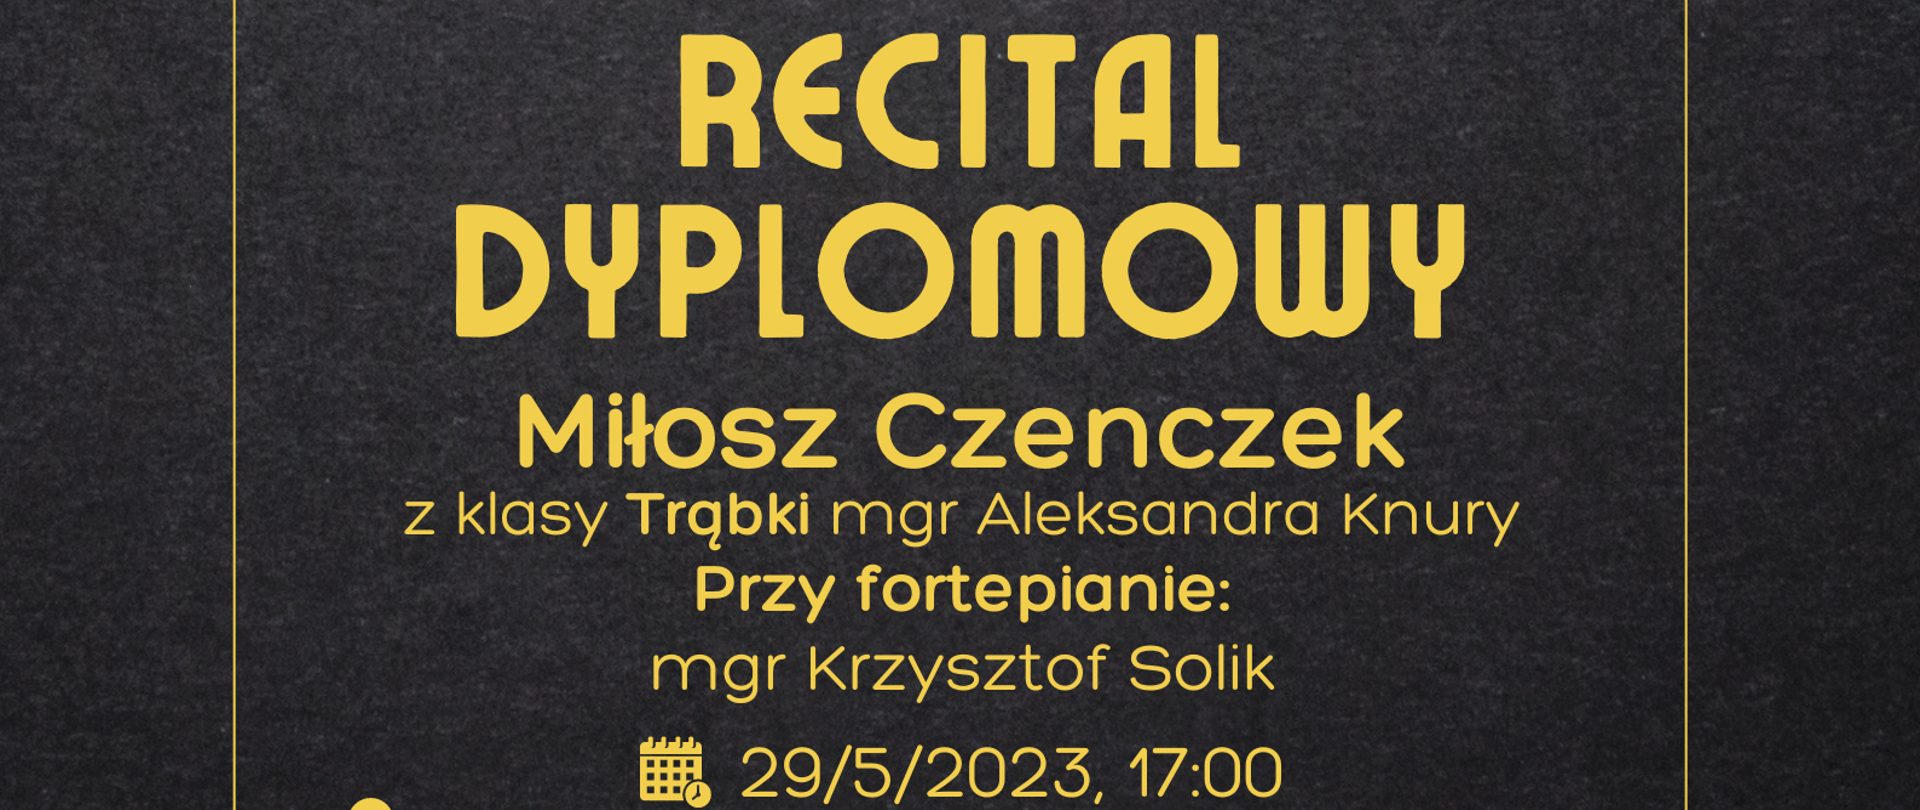 Plakat dotyczący Recitalu Dyplomowego odbywający się w dniu 29.05.2023 r. o godz. 17.00.